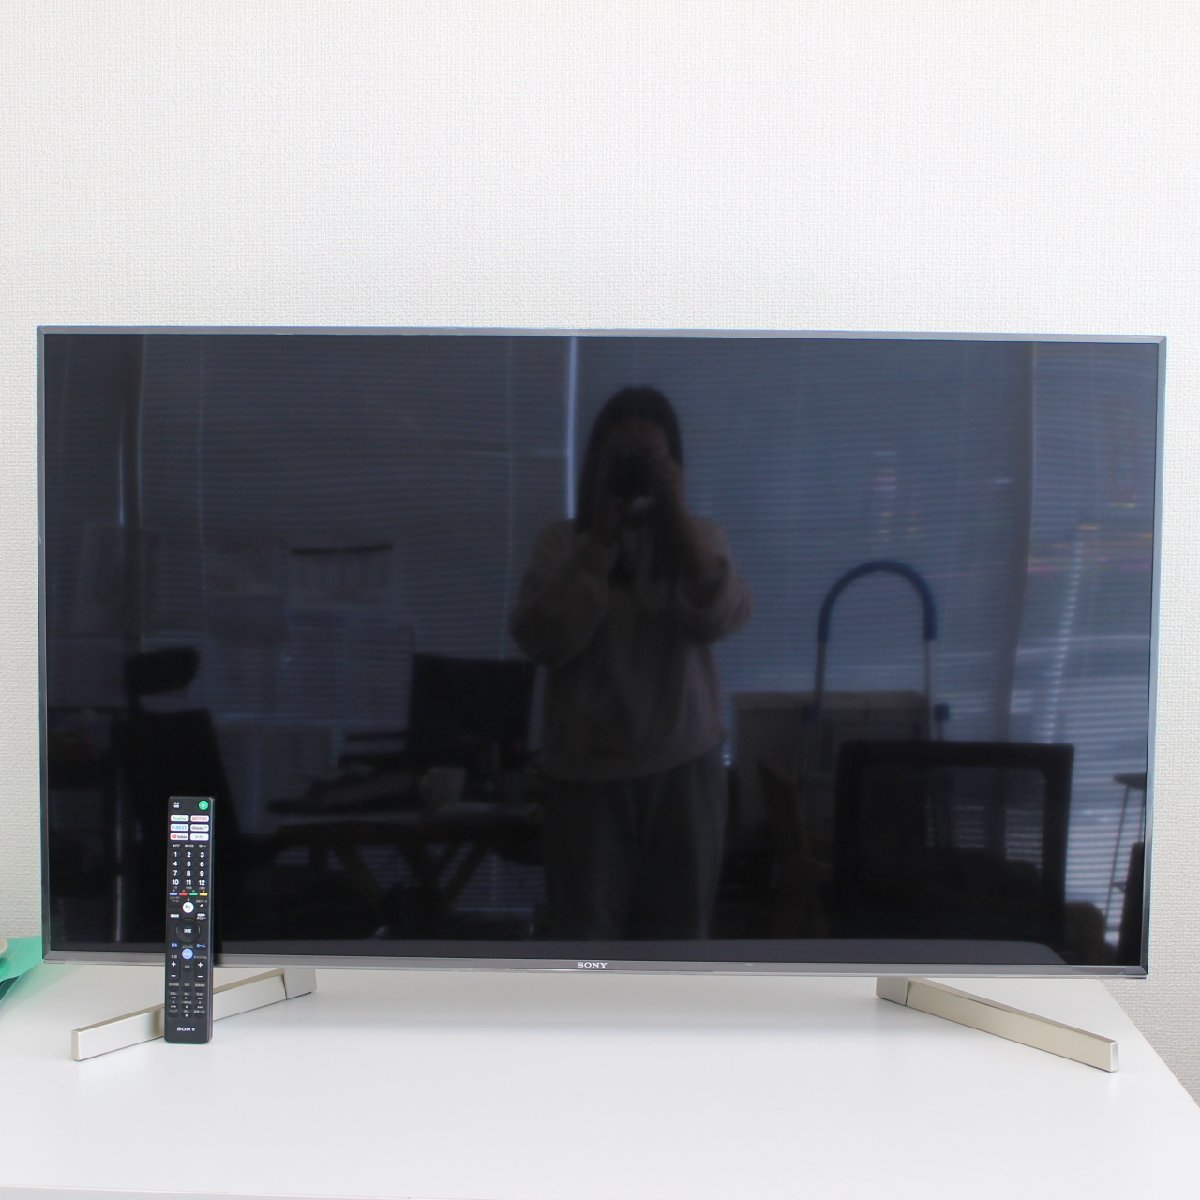 川崎市川崎区にて ソニー 4K液晶テレビ KJ-49X9000F 2018年製 を出張買取させて頂きました。